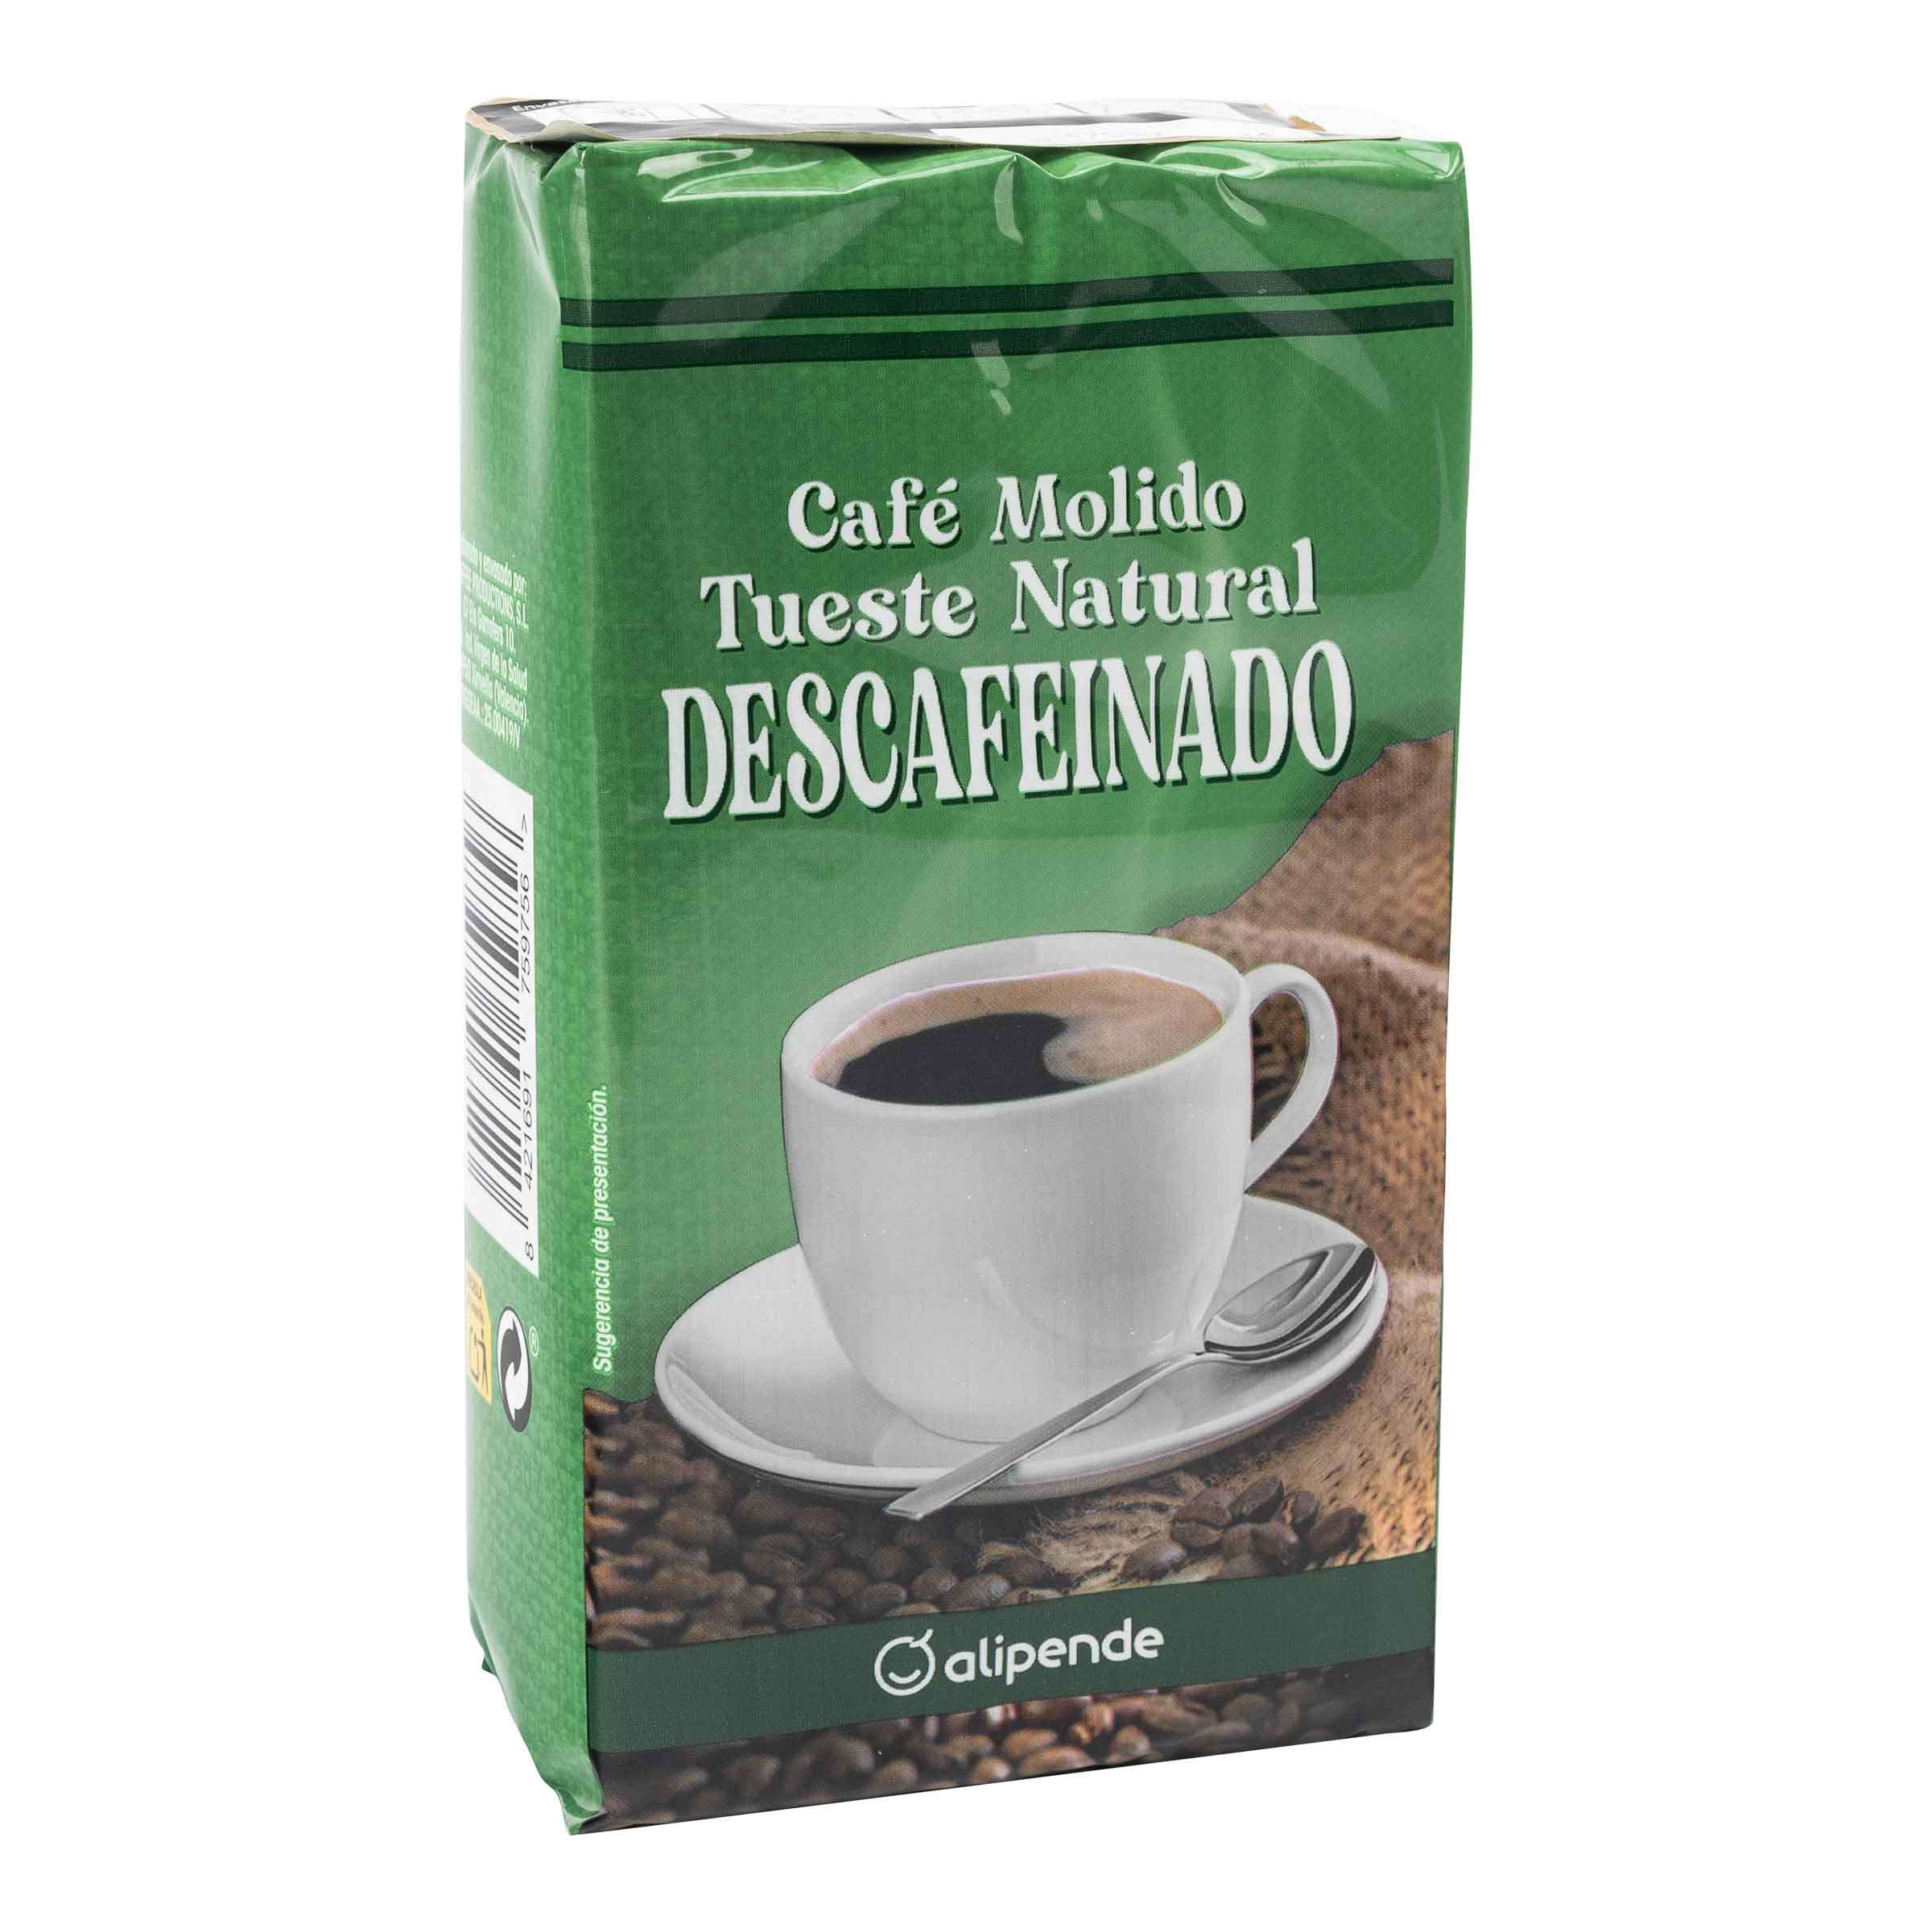 café molido mezcla descafeinado, 250g - El Jamón